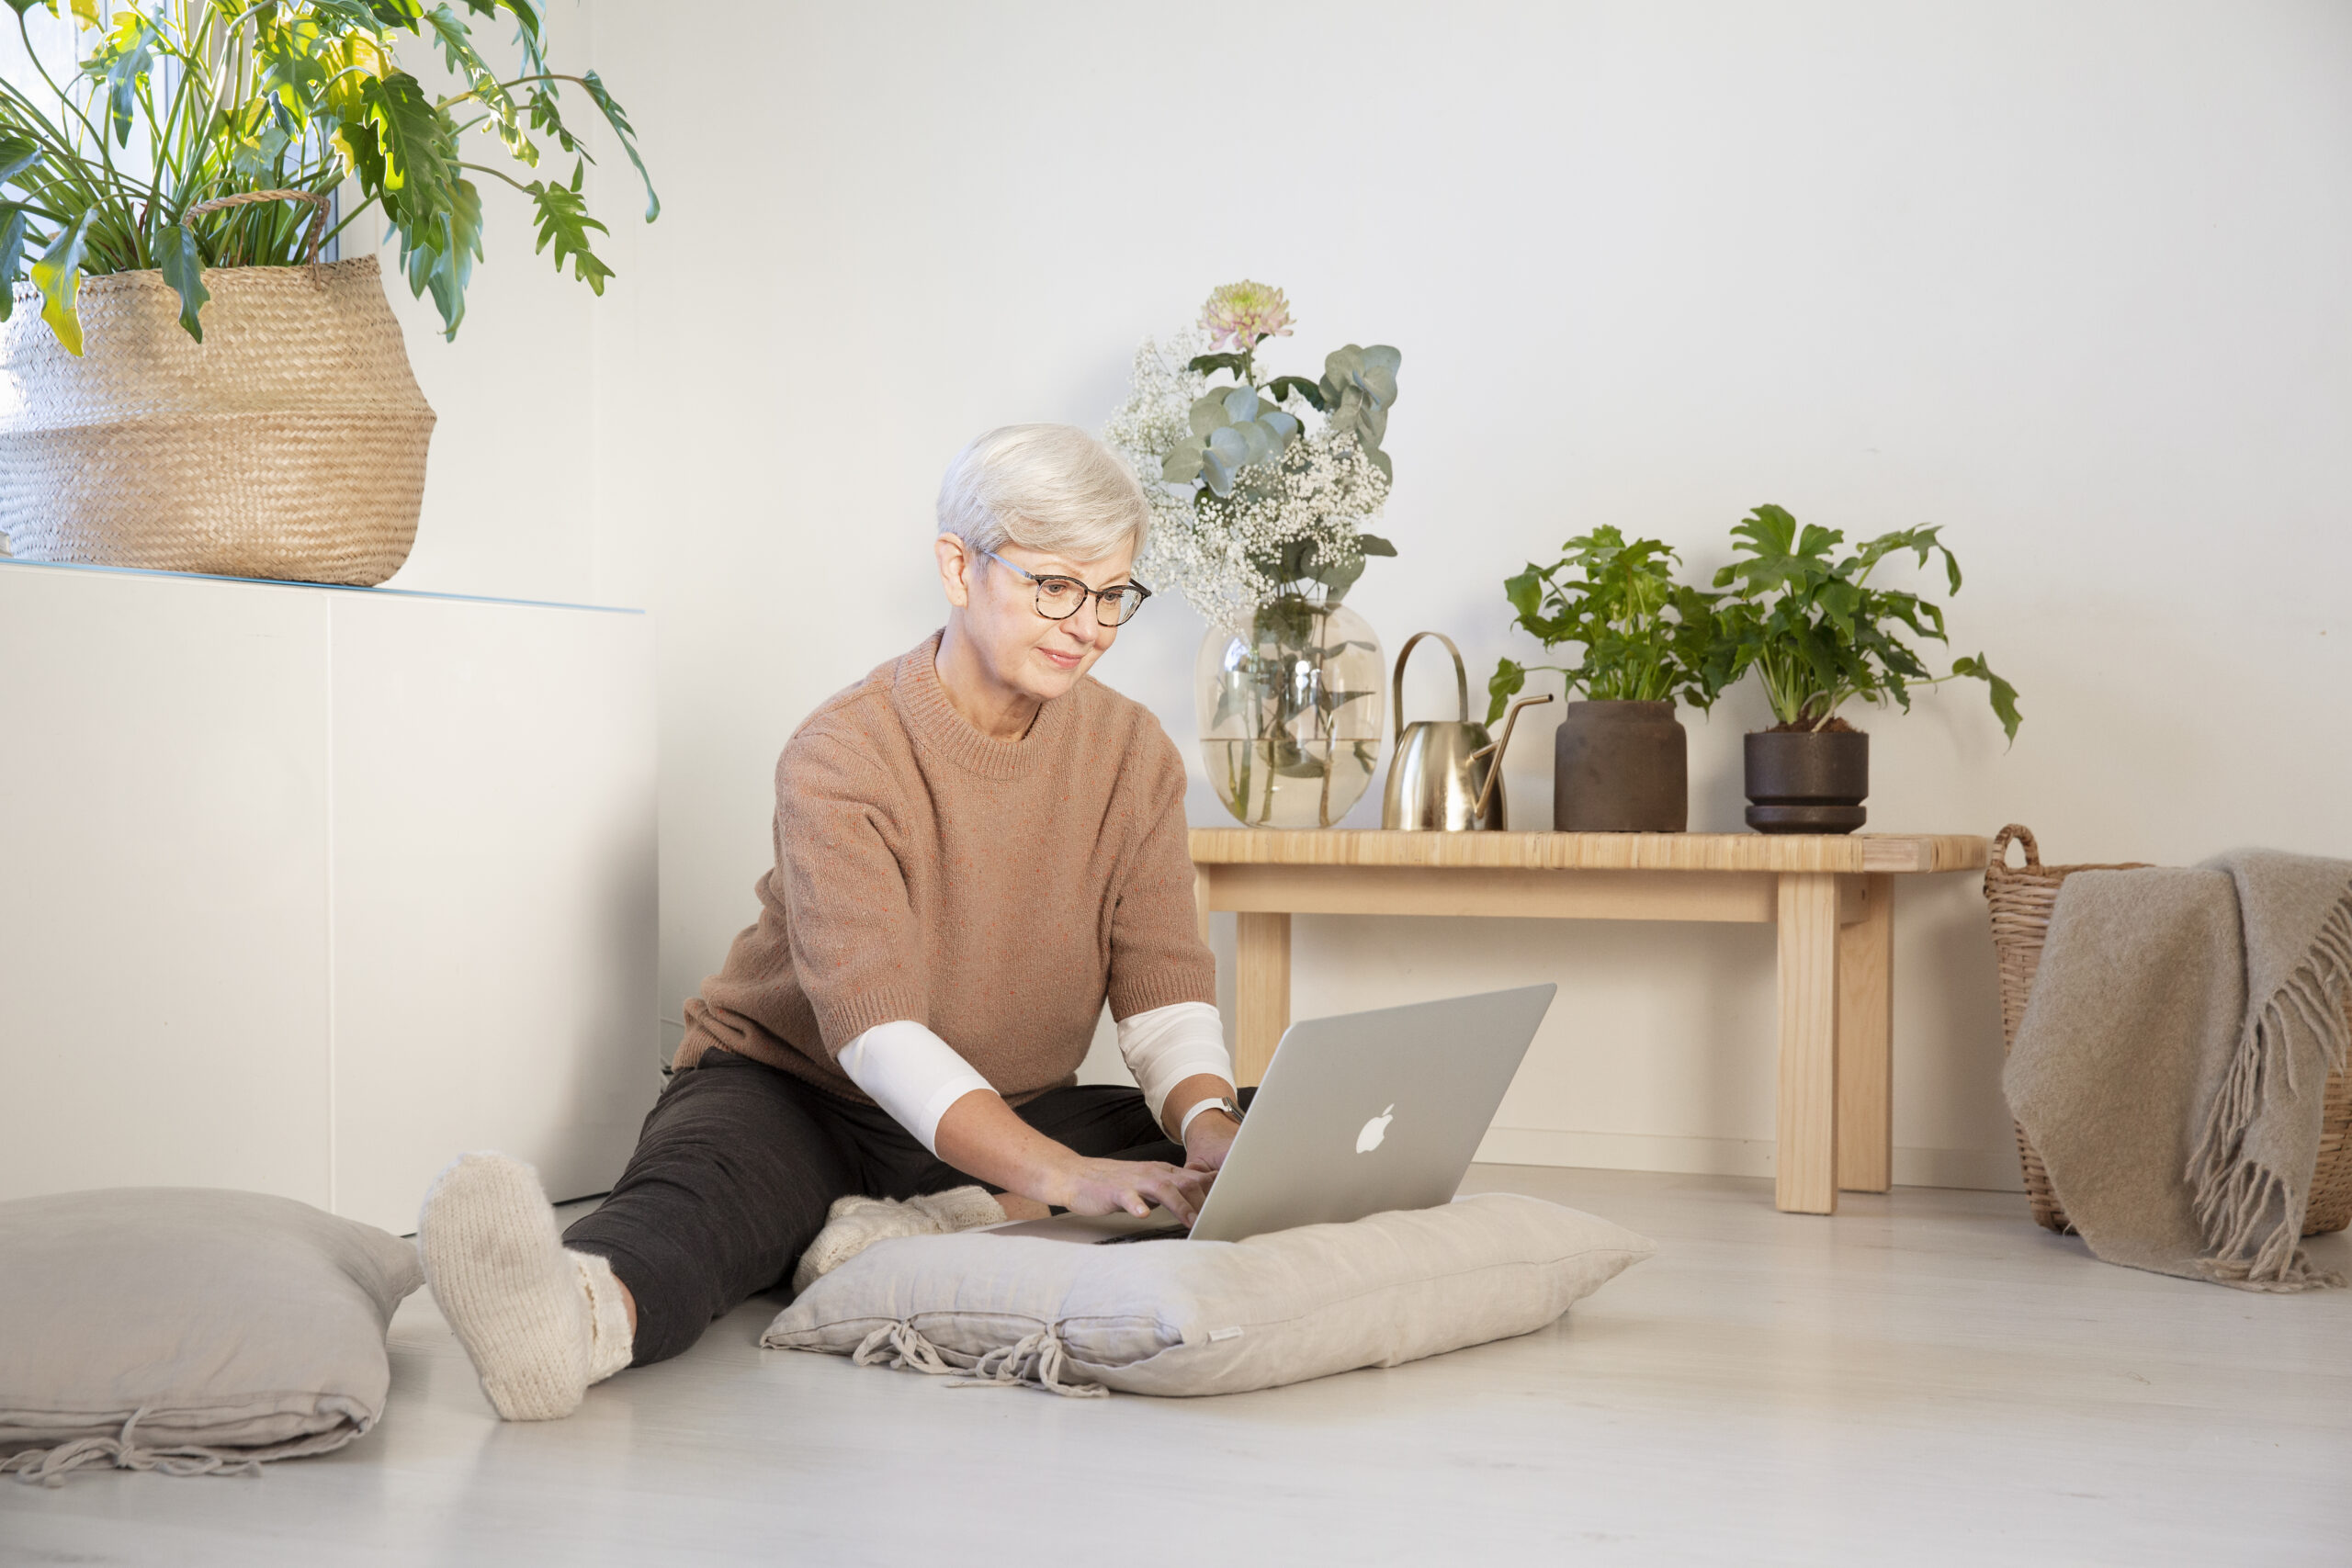 Nainen istuu rennosti lattialla ja näppäilee tietokonetta.